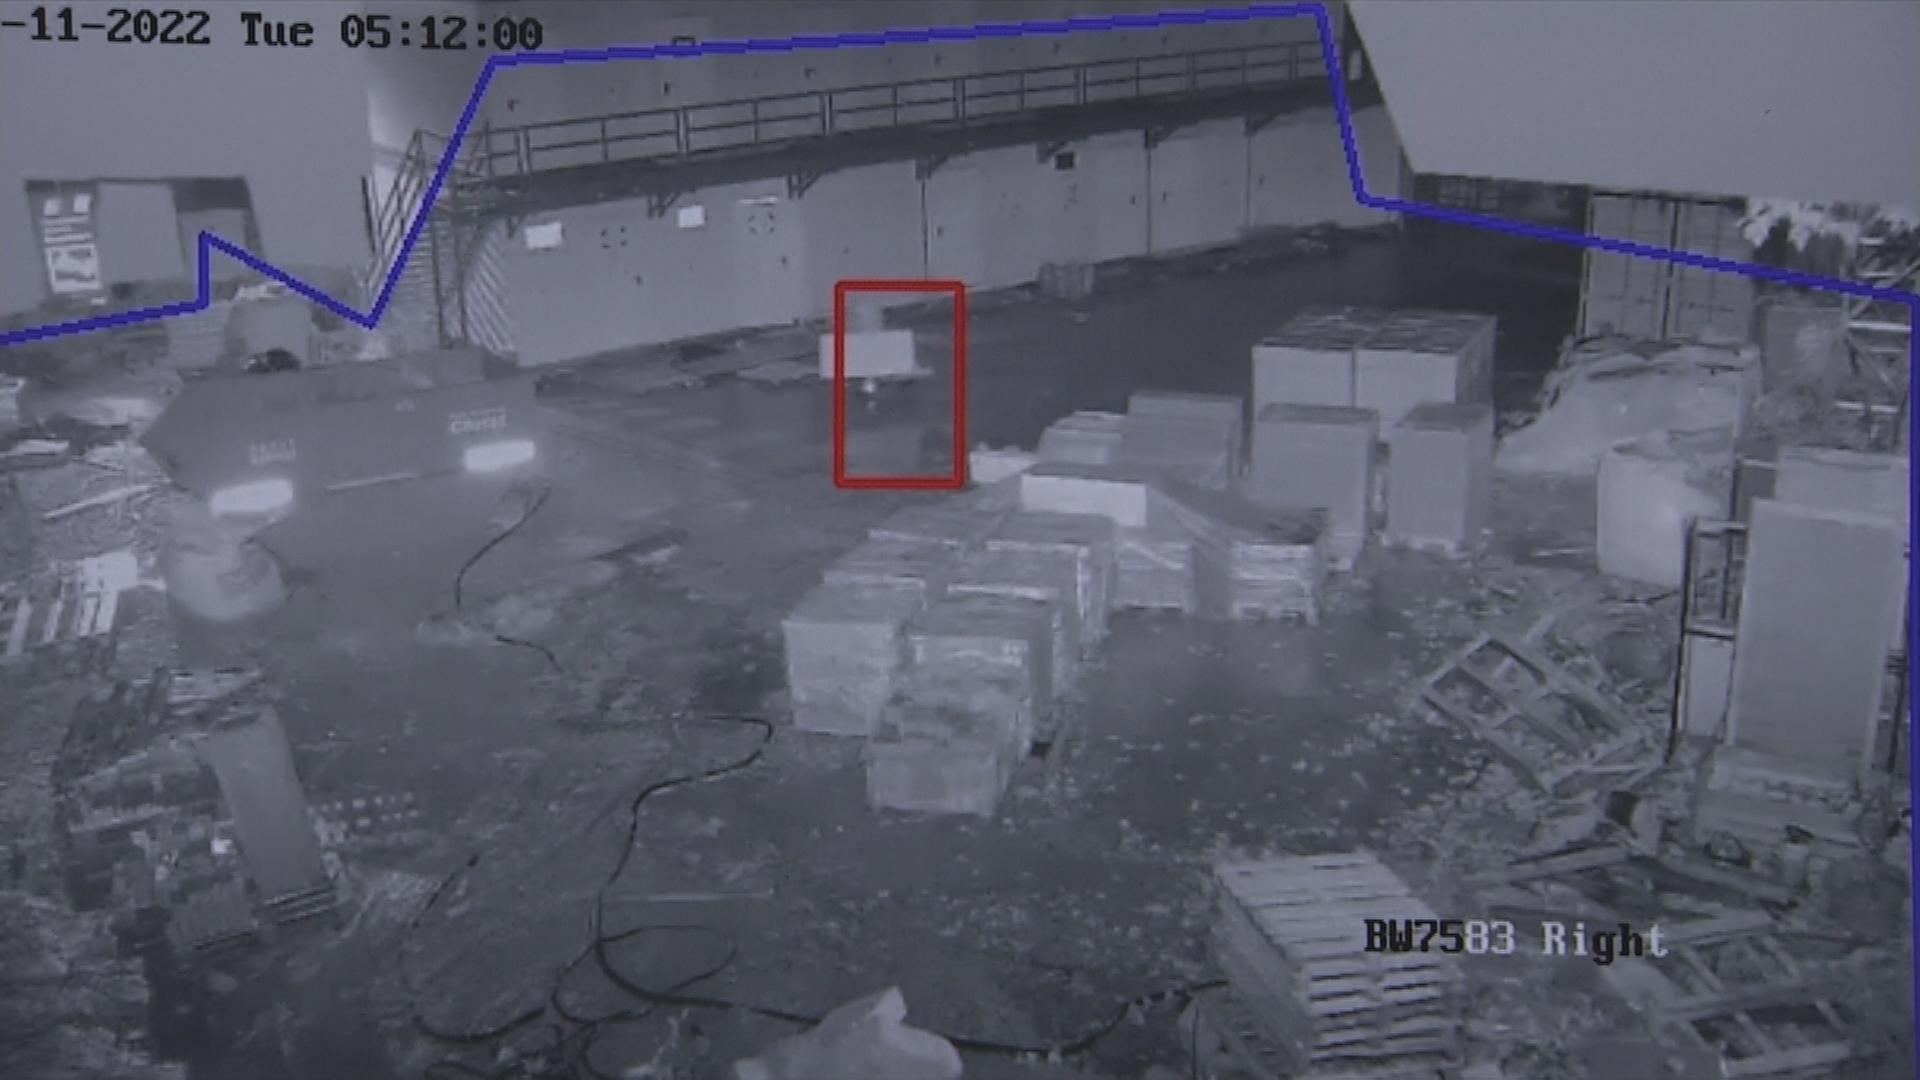 Schwarz-Weiß-Bild aus der Überwachungskamera. Eine Person ist rot umrandet, die gerade eine Platte klaut.